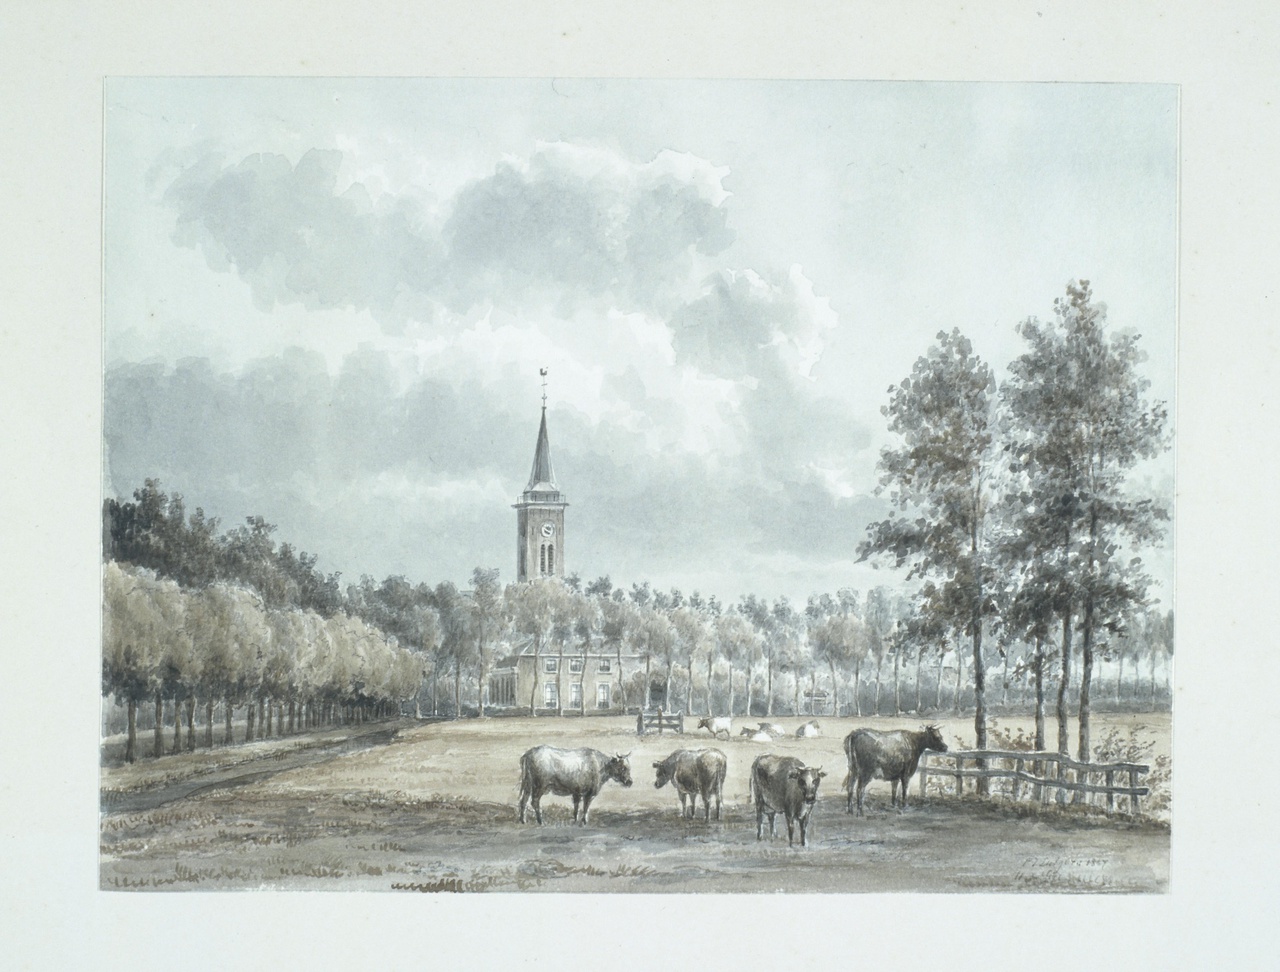 De kerk van Breukelen vanuit het noorden gezien